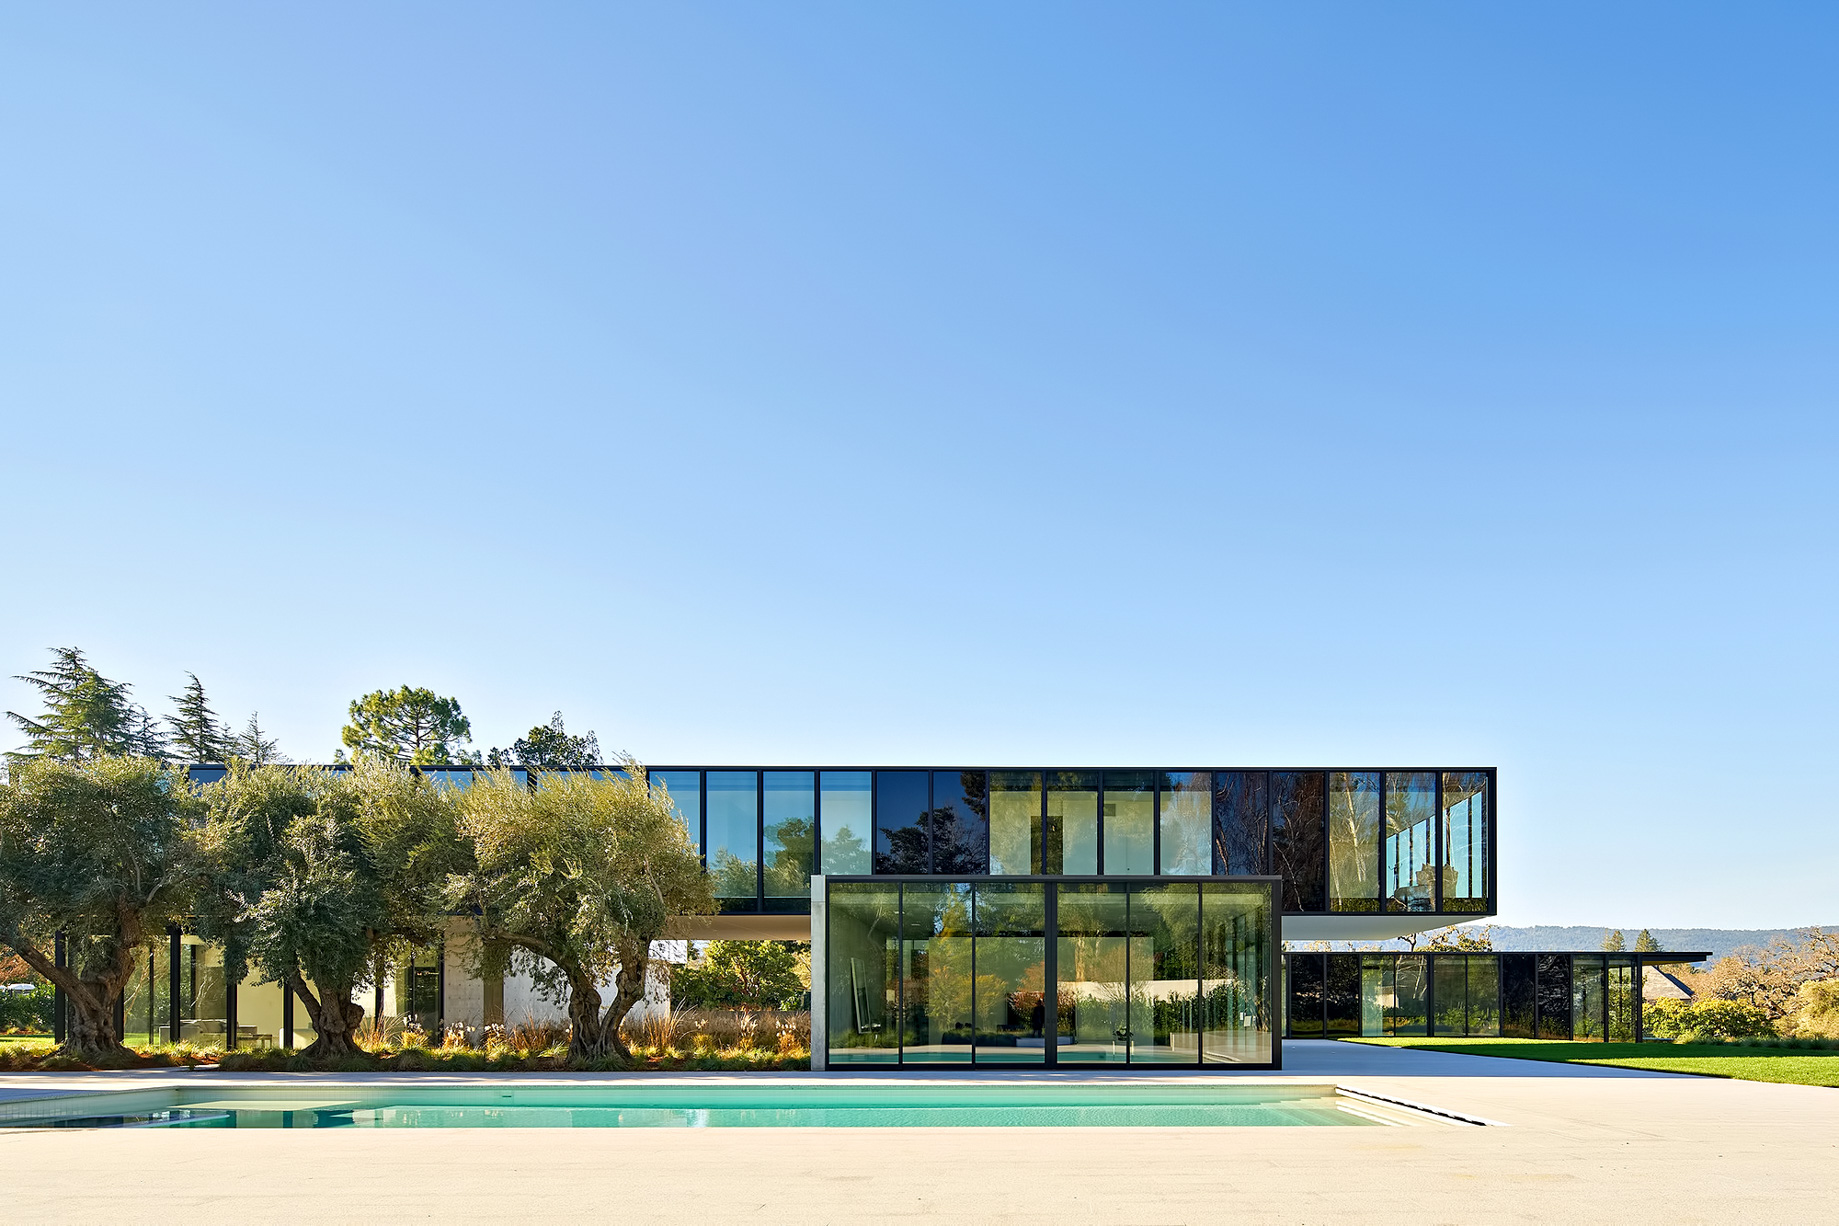 Oz House Luxury Residence – Ridge View Dr, Atherton, CA, USA